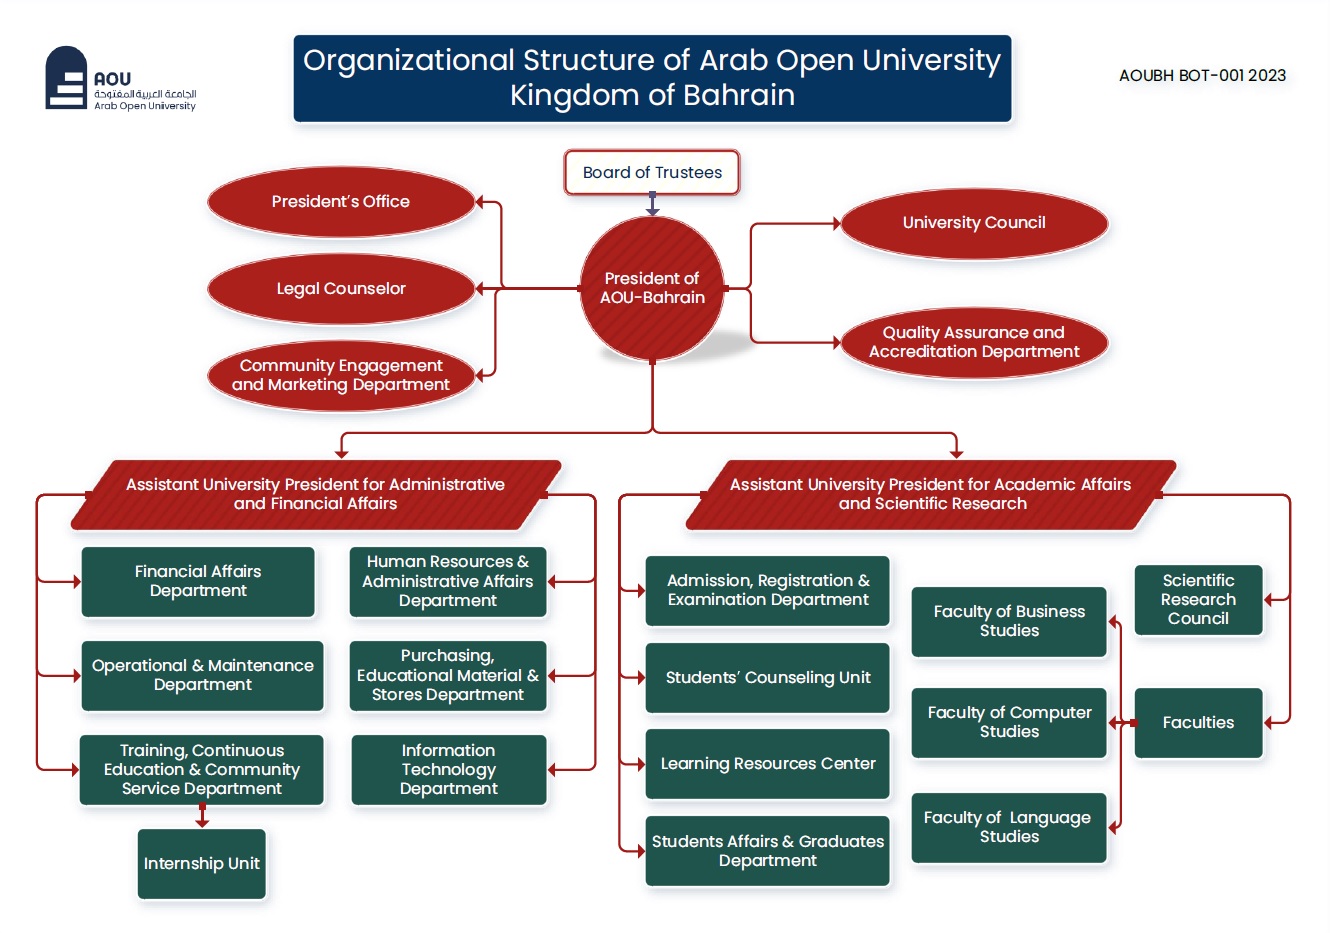 Organizational Structure AOUBH BOT-001 2023_EN.jpg